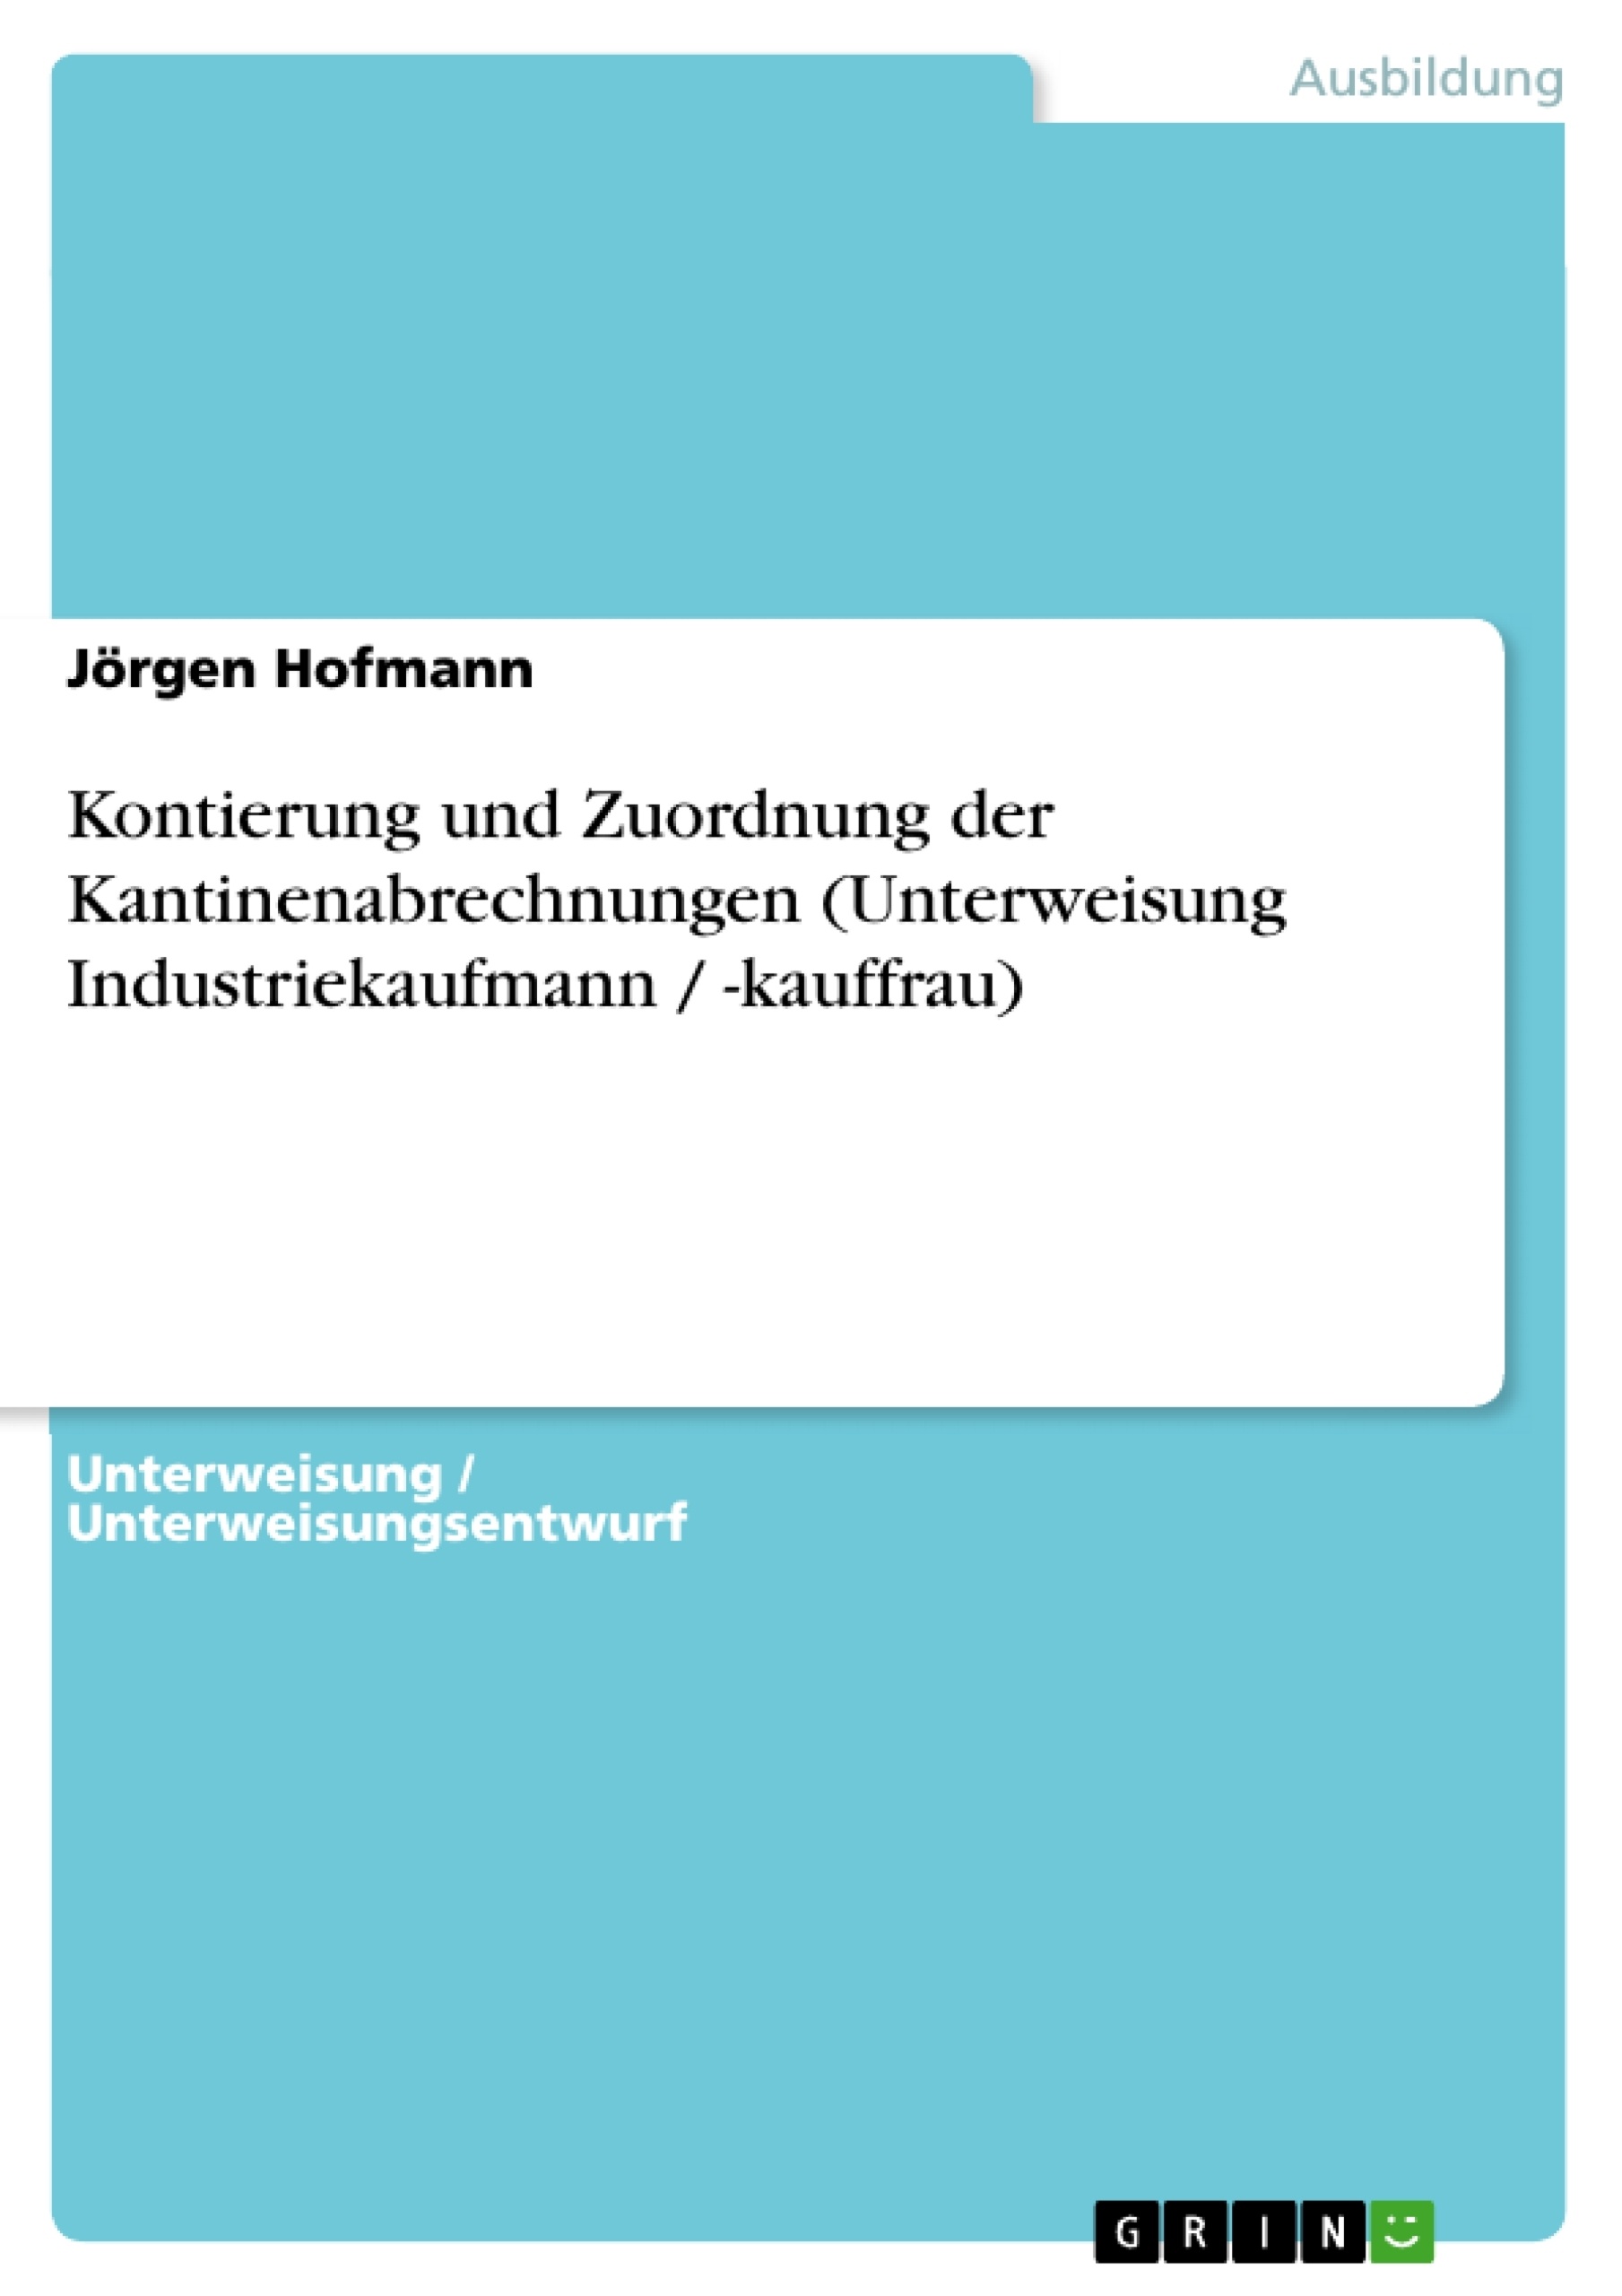 Title: Kontierung und Zuordnung der Kantinenabrechnungen (Unterweisung Industriekaufmann / -kauffrau)